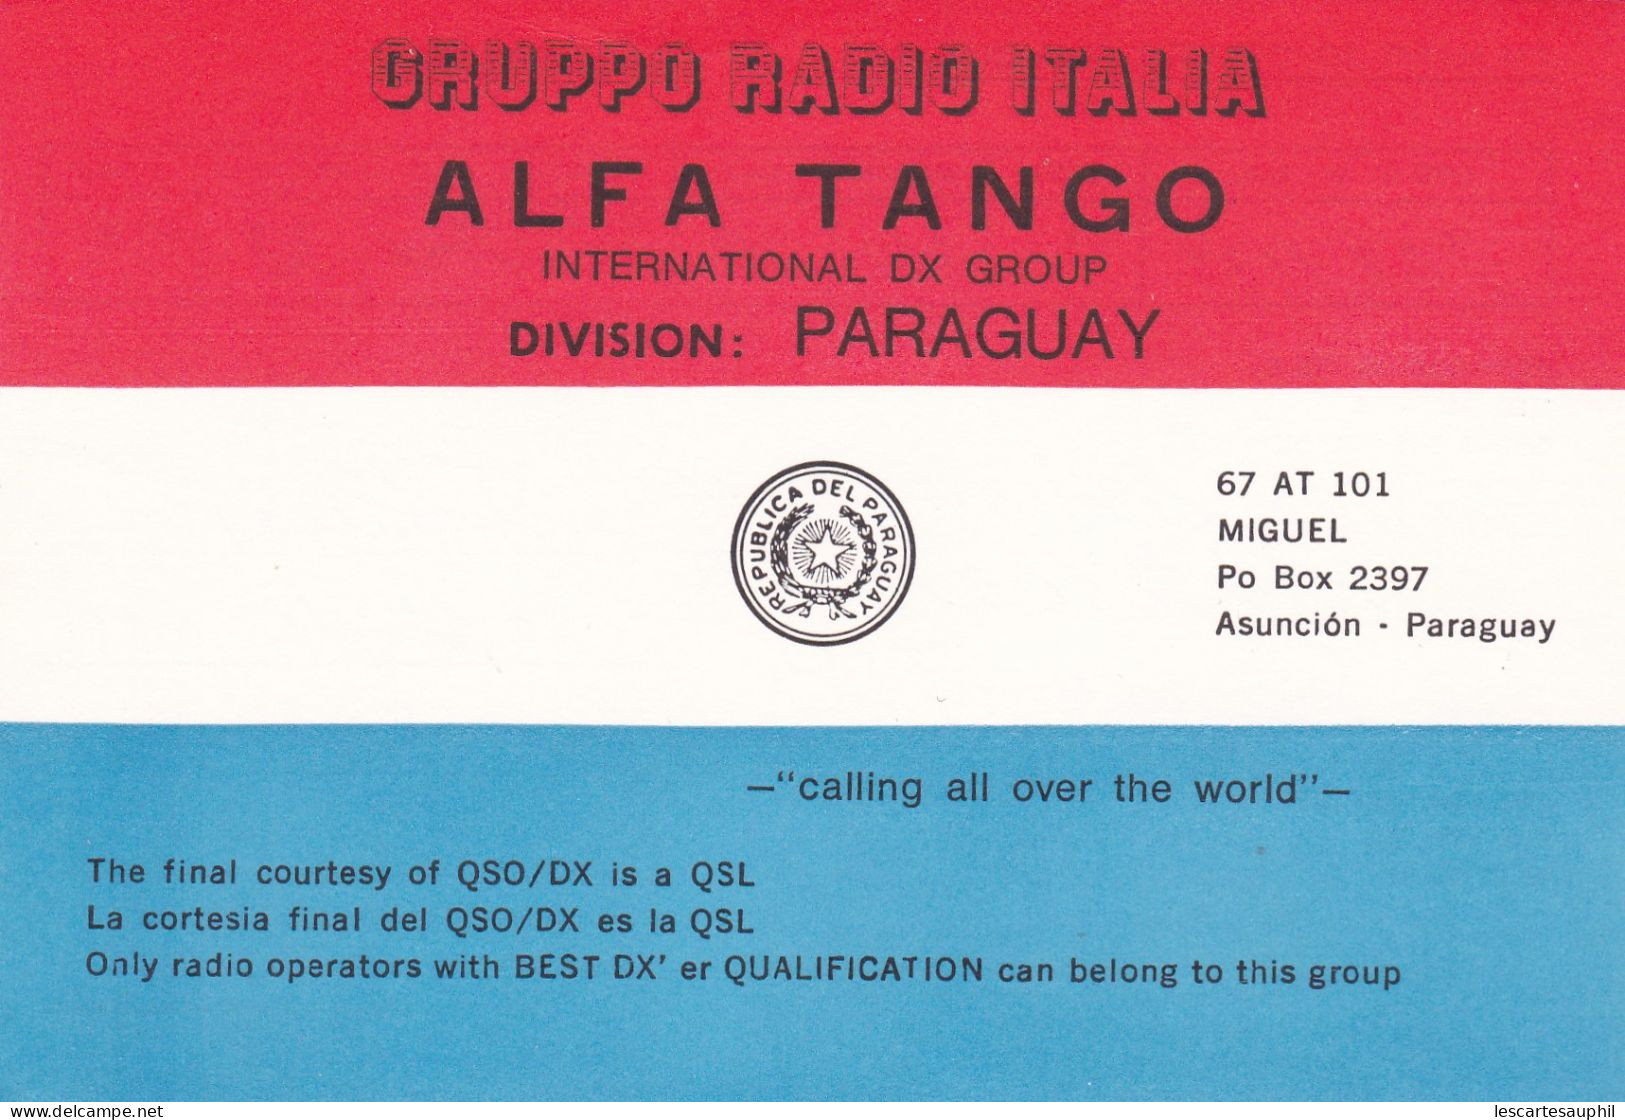 Qsl Alfa Tango Division Paraguay 1991 Op Miguel 67 AT 101 - CB-Funk